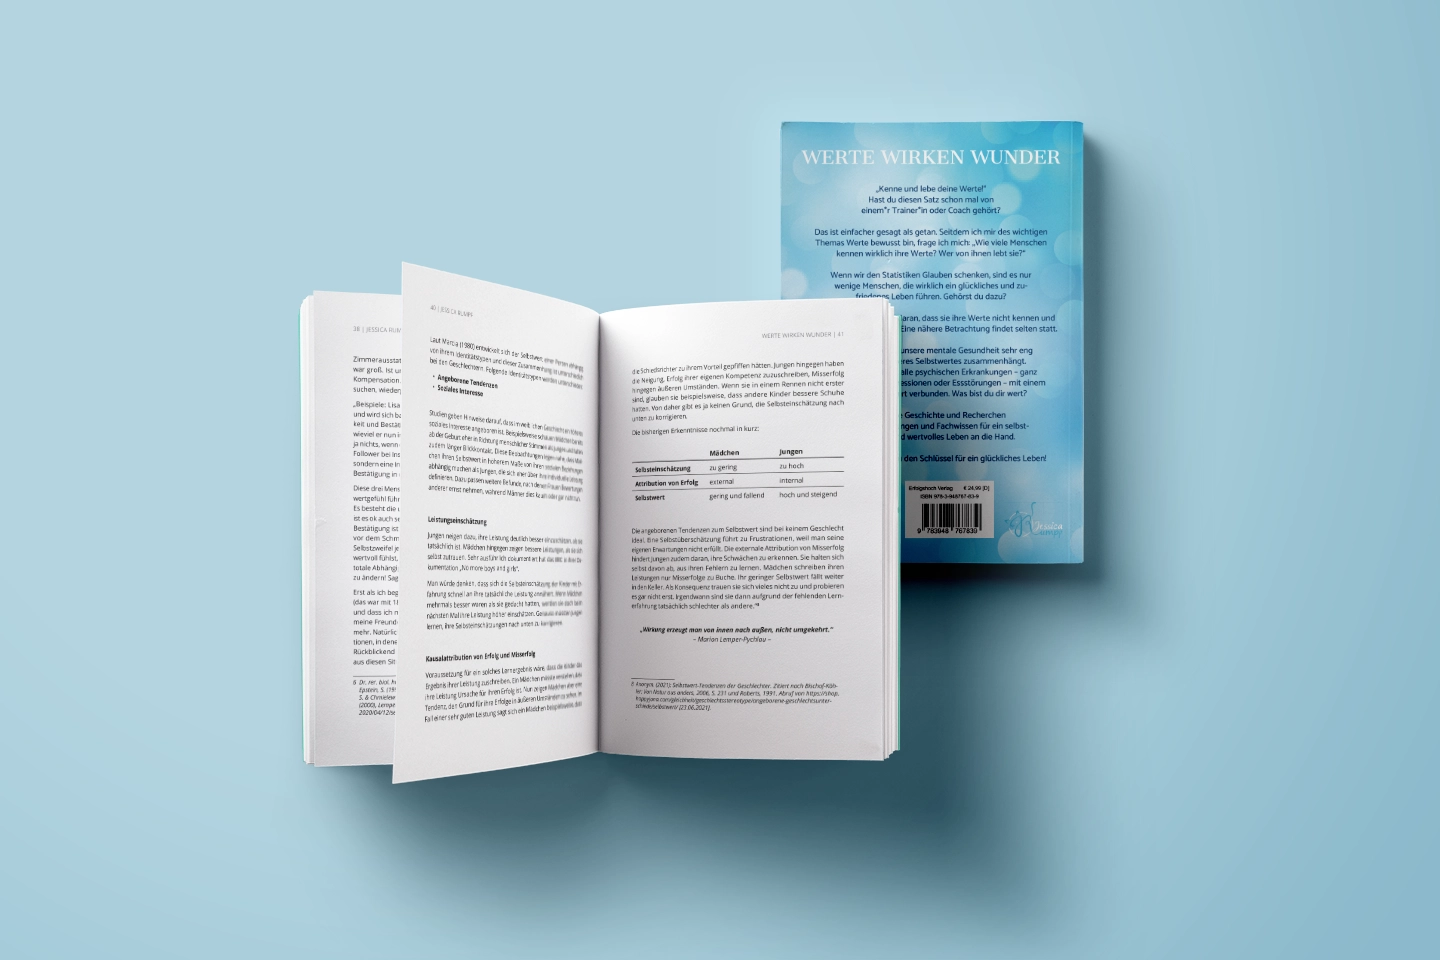 Das aufgeschlagene Buch mit Blick auf die Doppelseite zeigt die professionelle Buchgestaltung und den Buchumschlag.